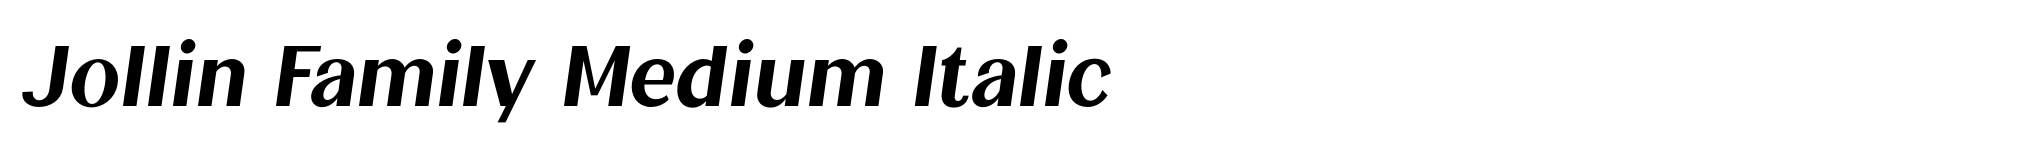 Jollin Family Medium Italic image